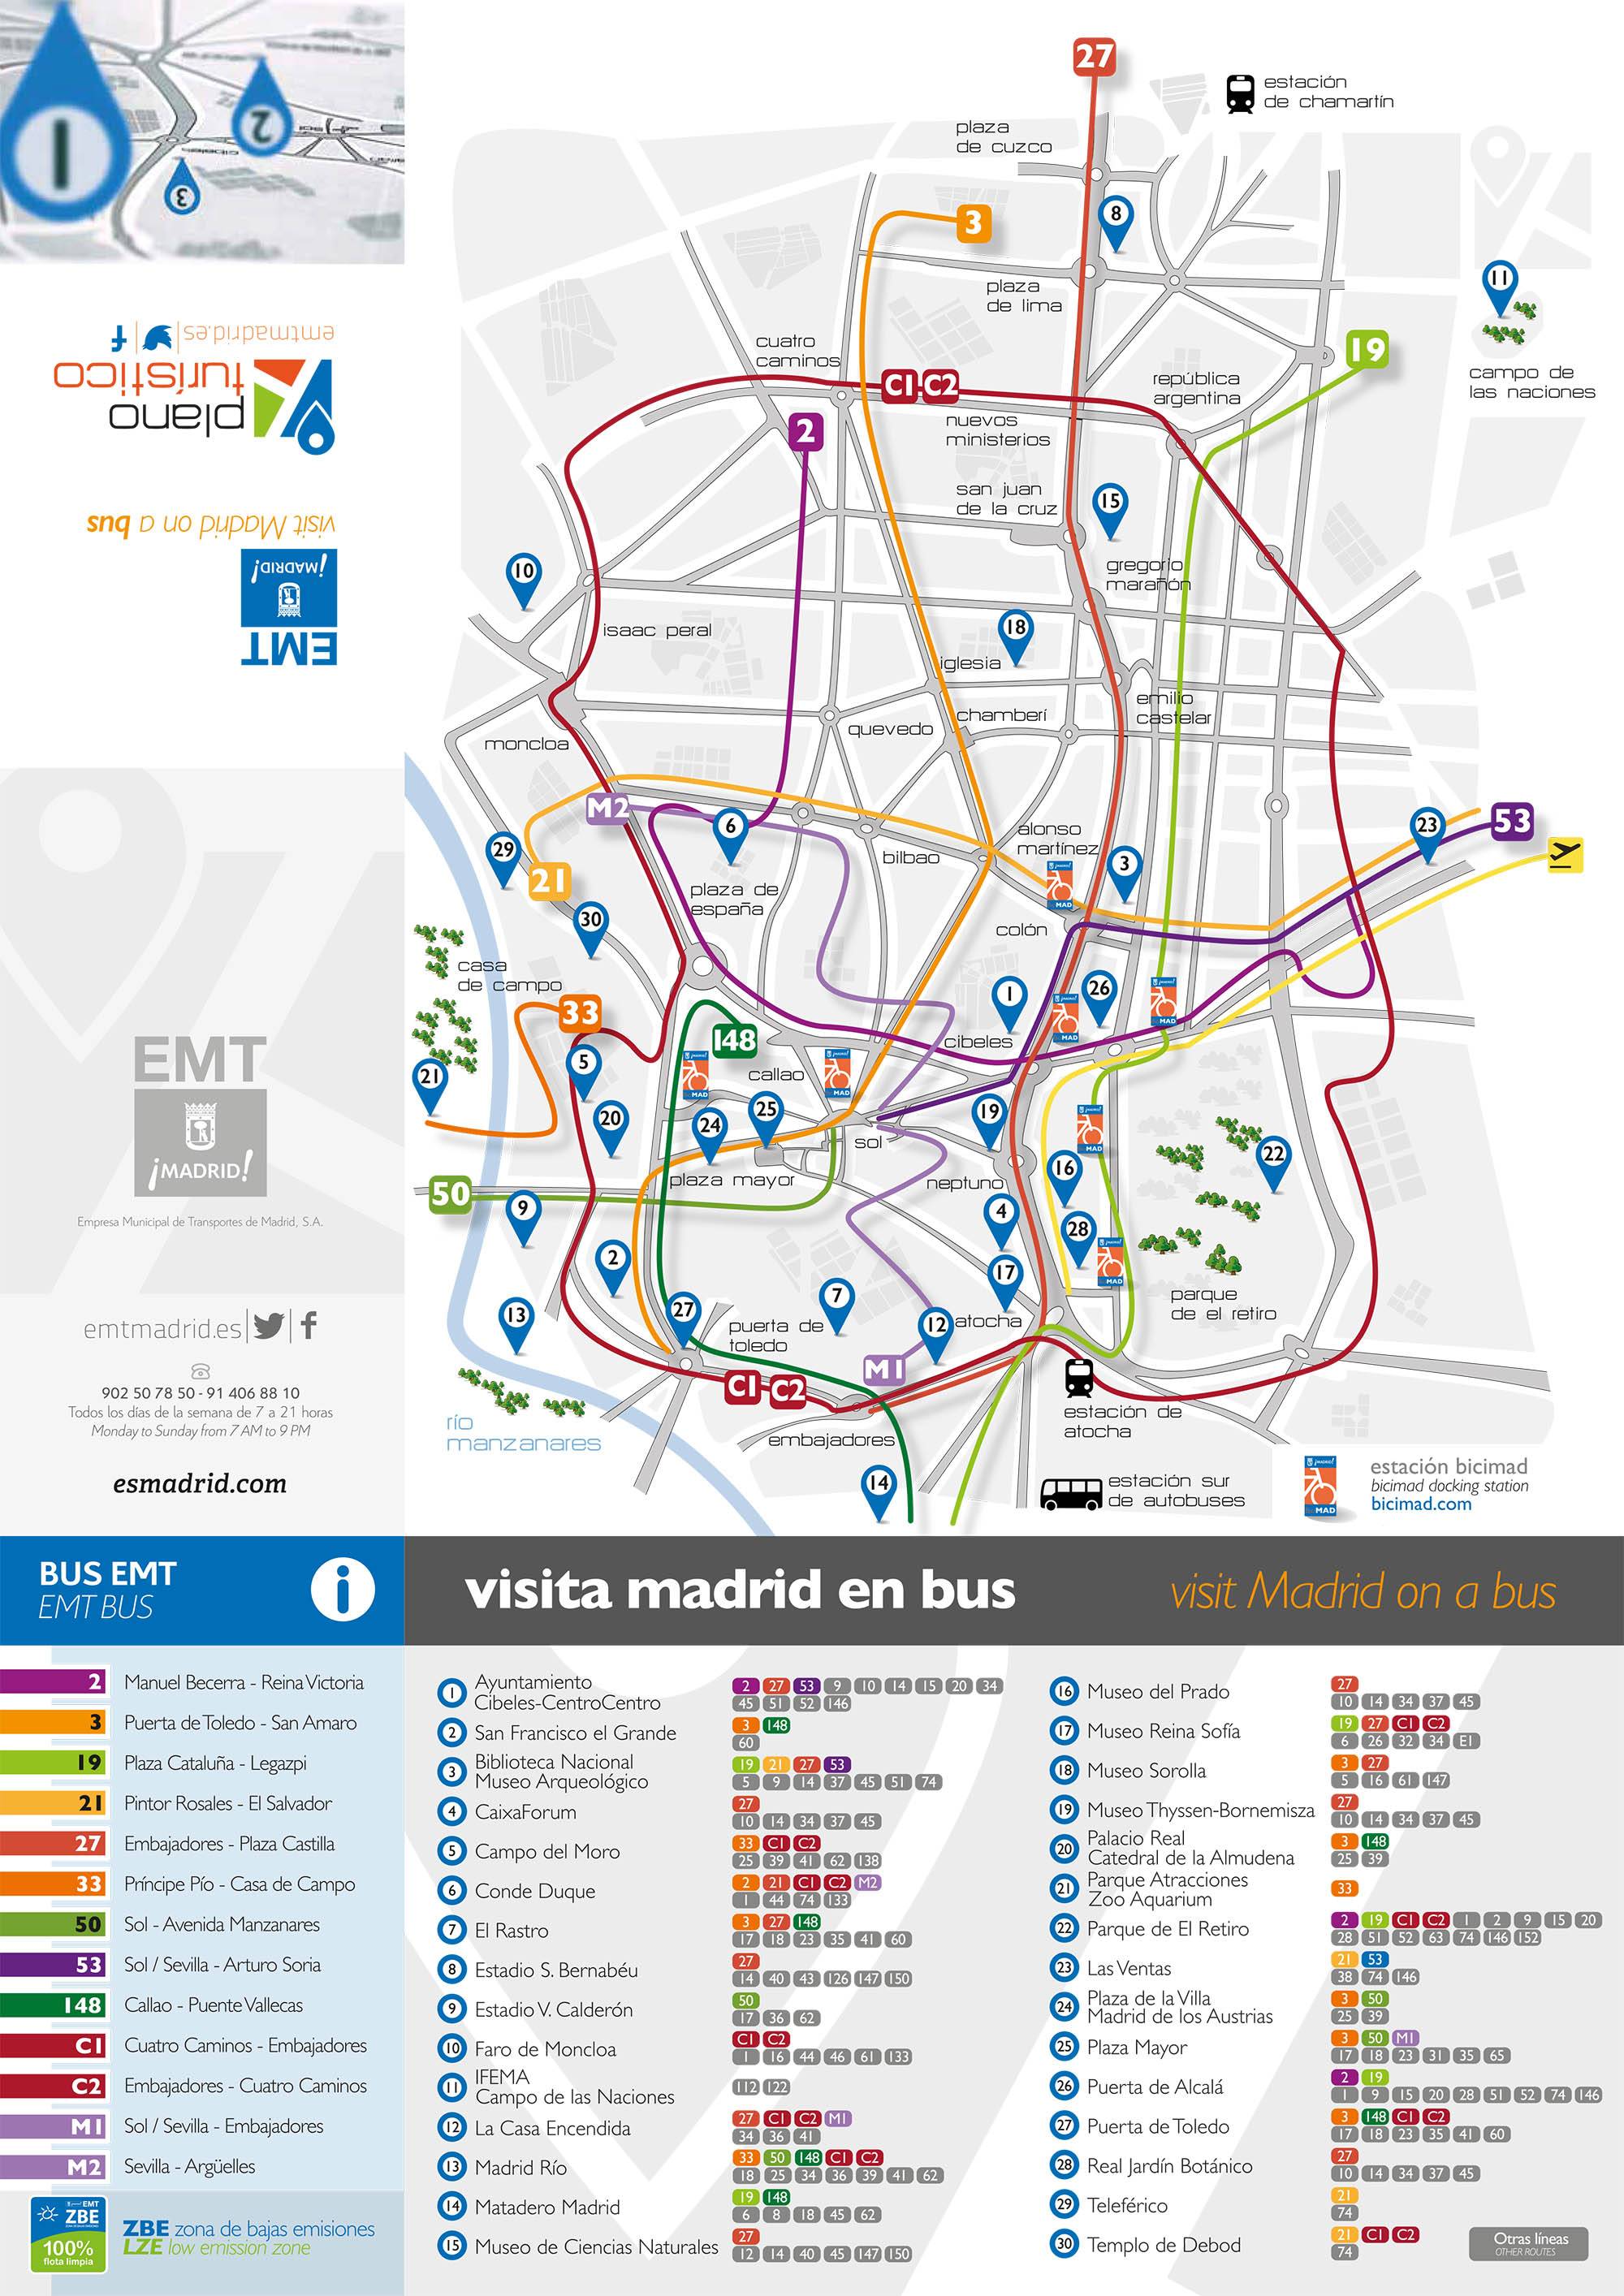 Как организован общественный транспорт в Мадриде